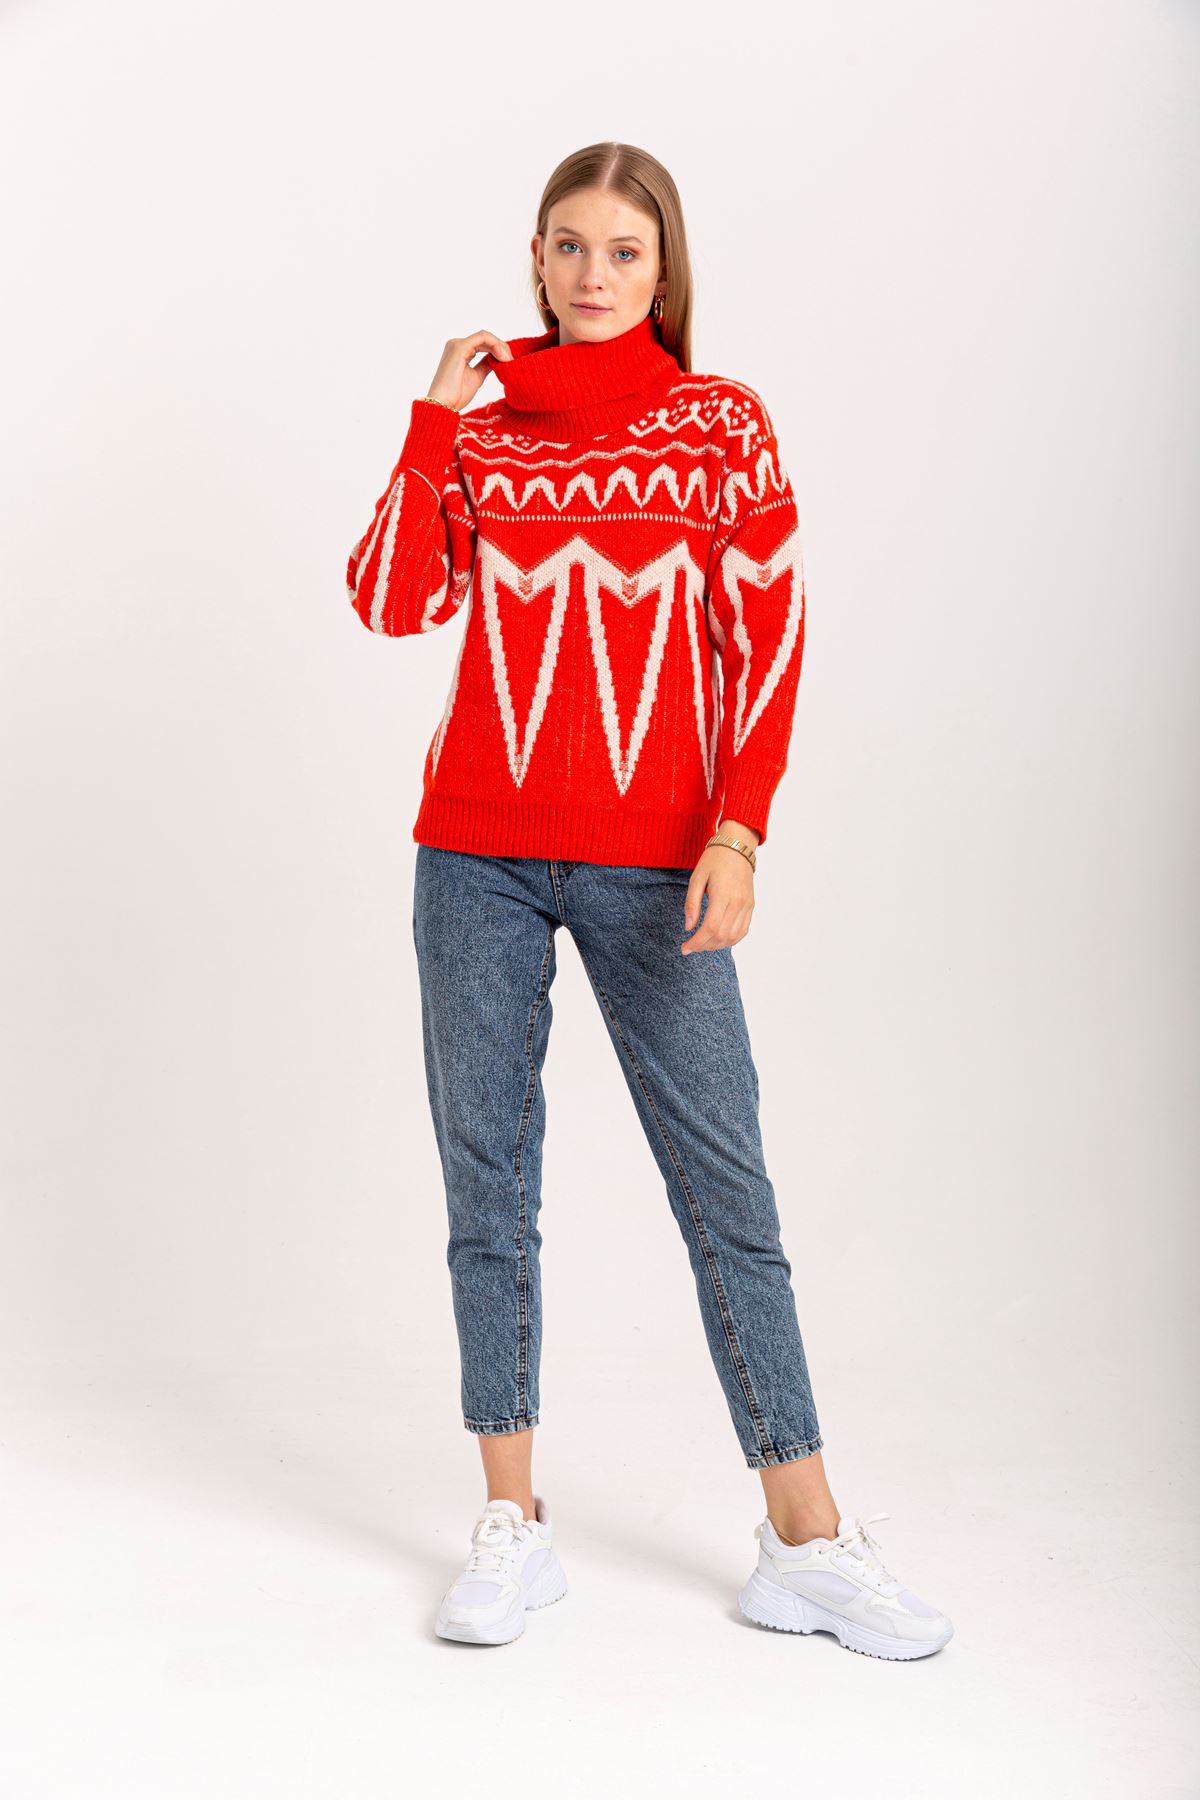 Knitwear Fabric Long Sleeve Turtle Neck Striped Women Sweater - Red